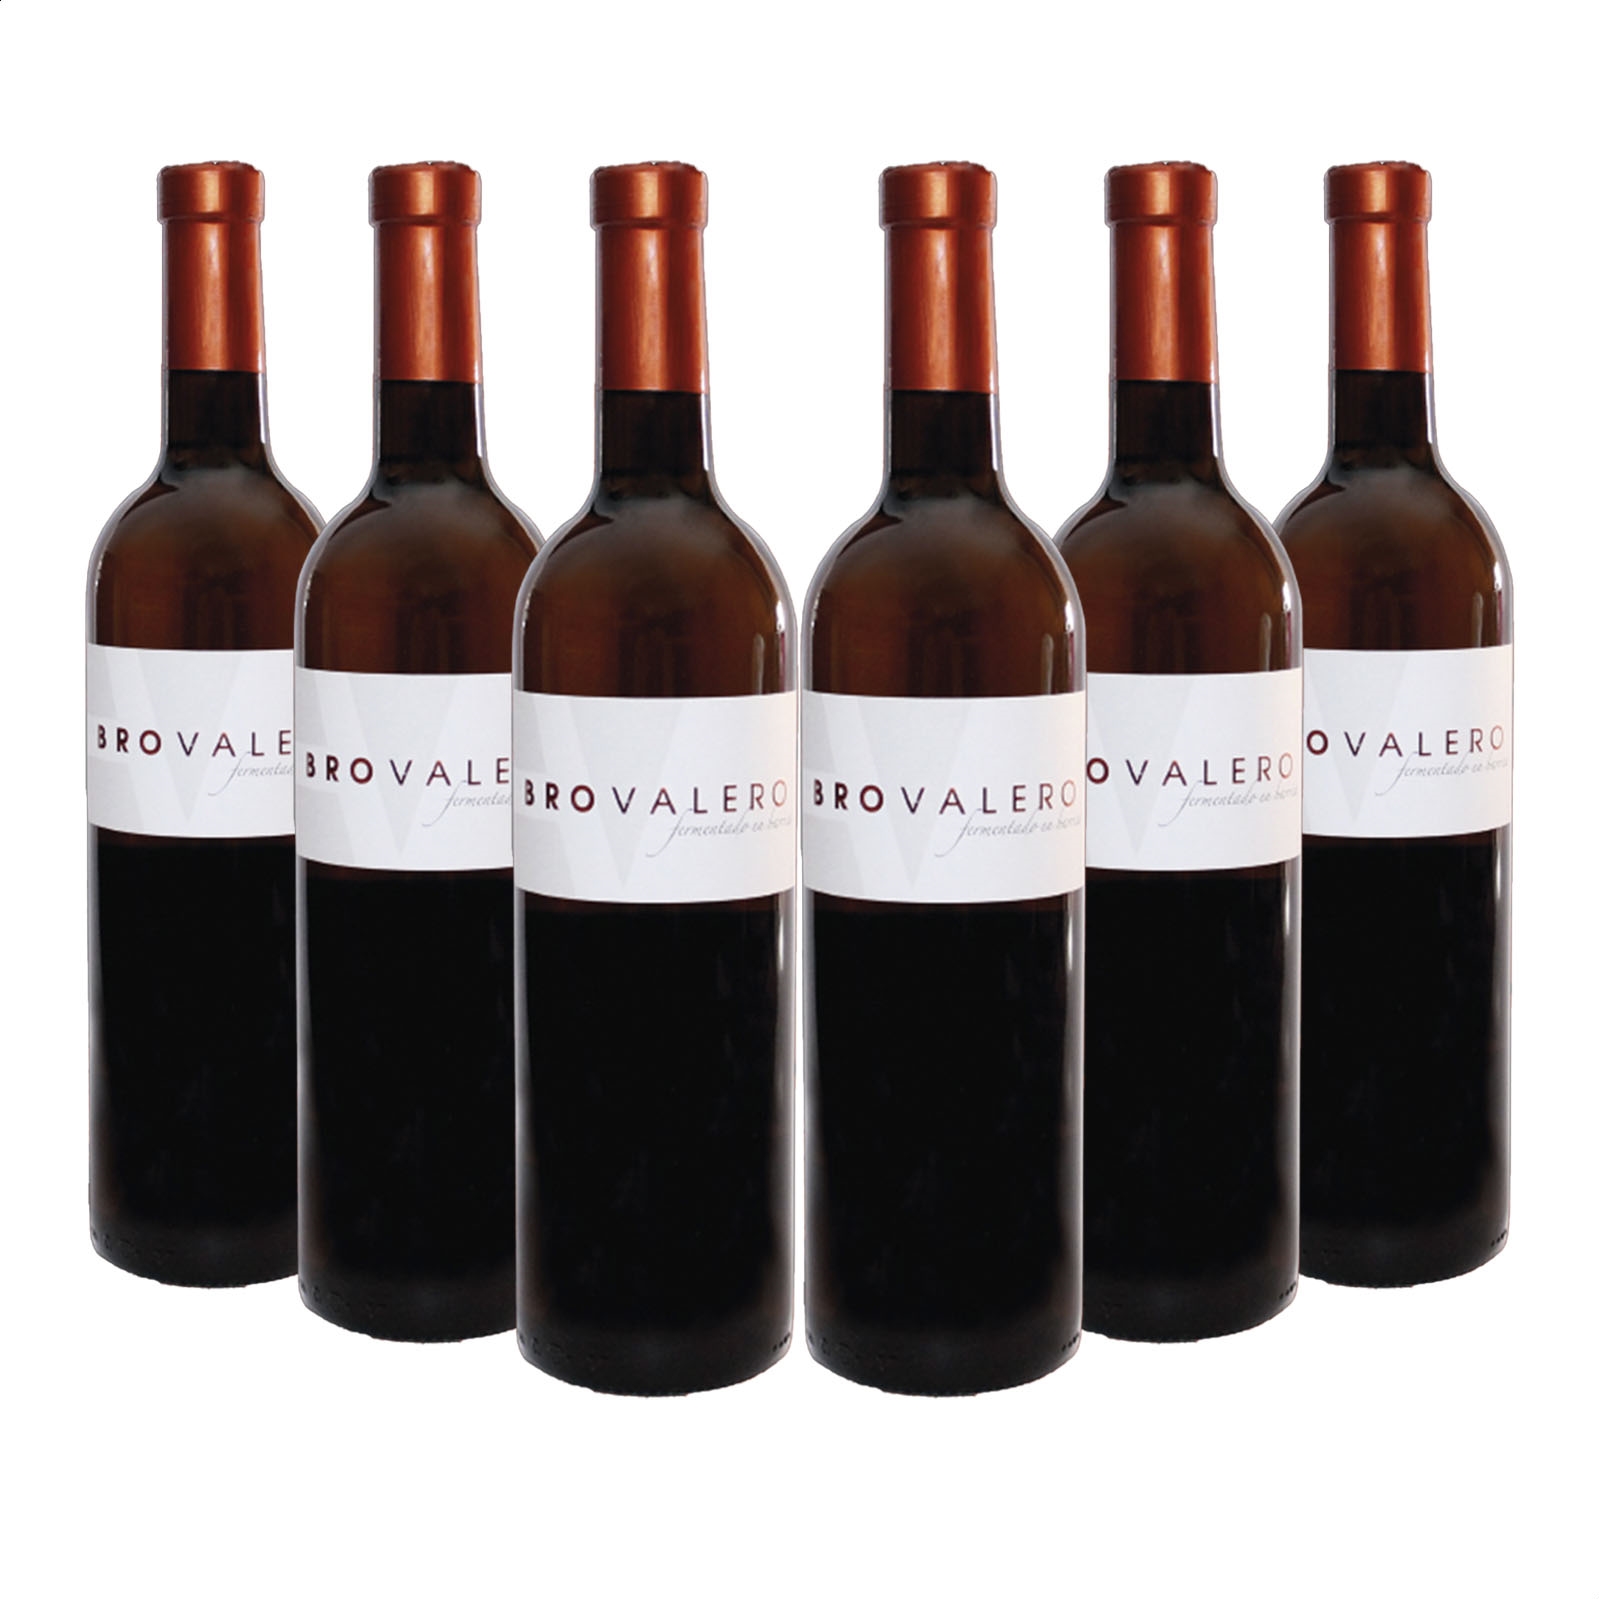 Bro Valero - Vino blanco fermentado en barrica D.O.P. La Mancha 75cl, 6uds